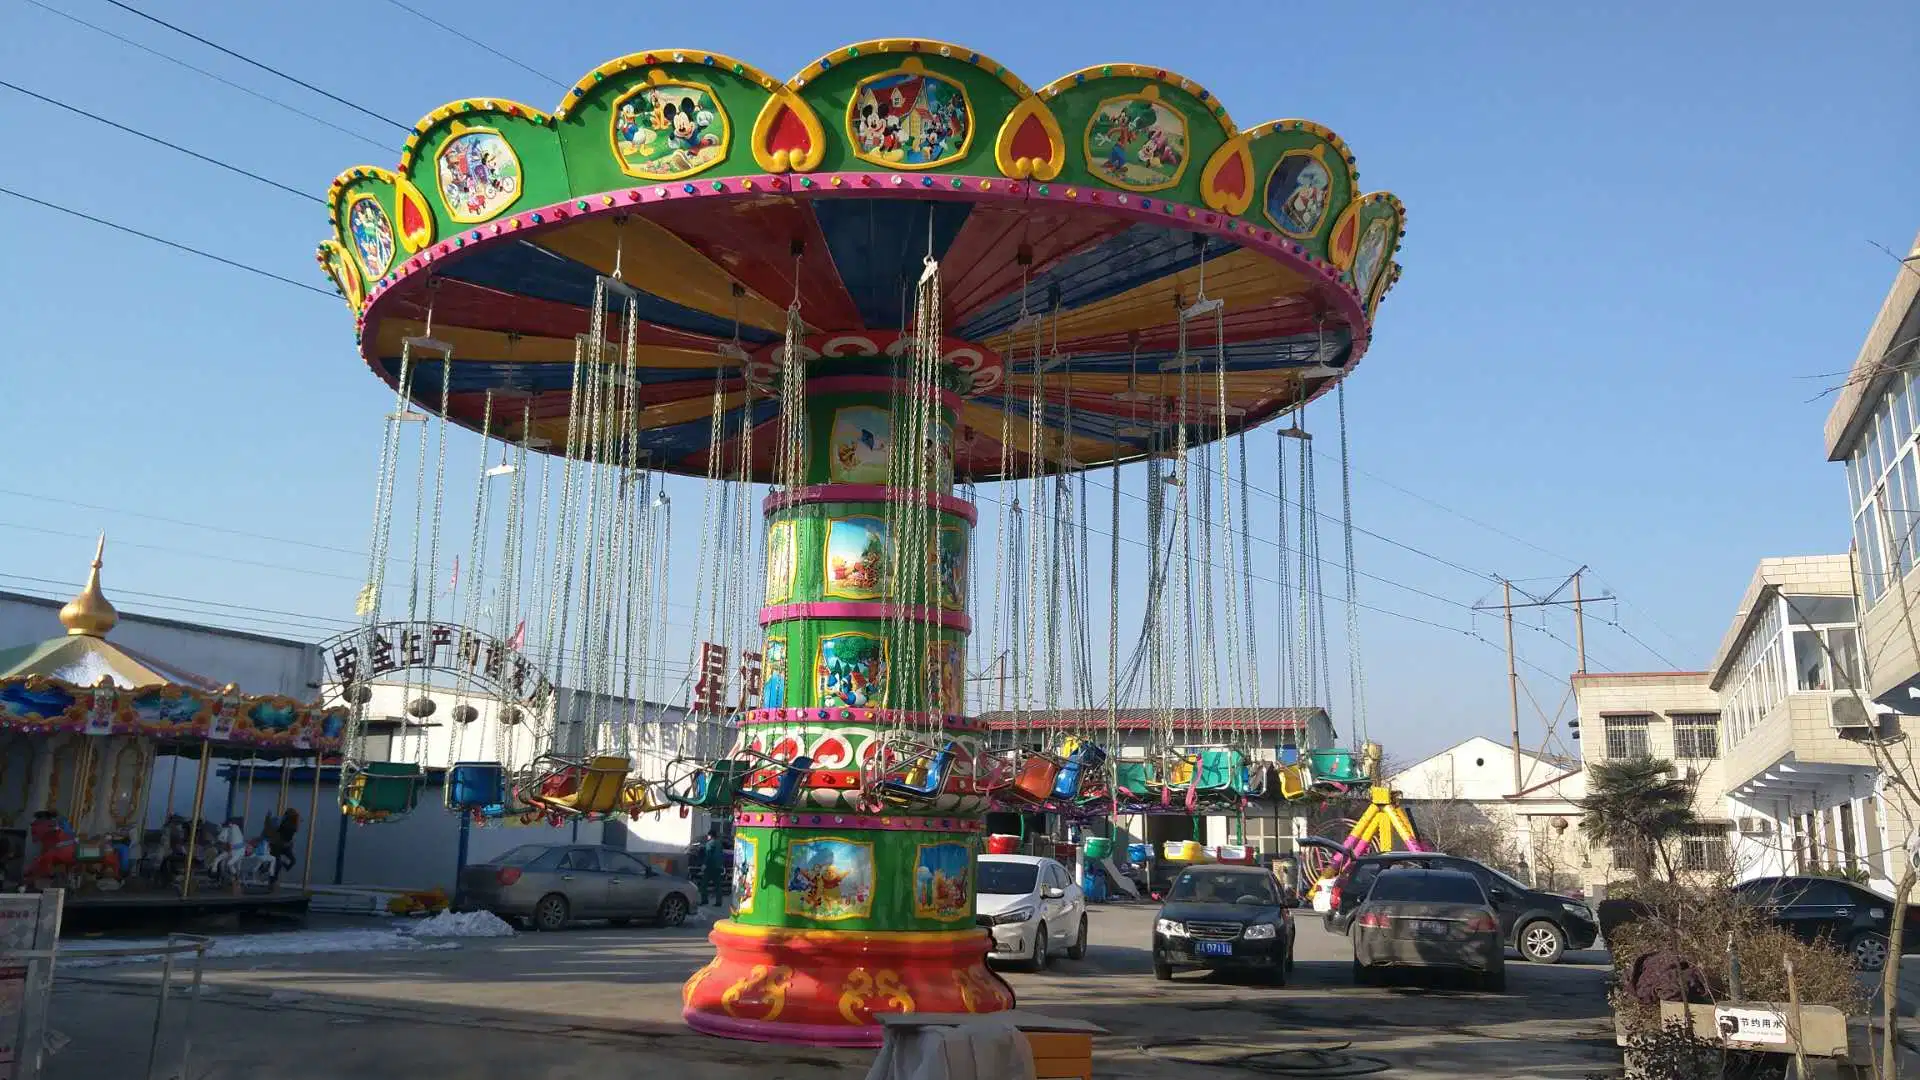 Manèges de parc d'attractions pour enfants World Merry-Go-Round terrain de jeu extérieur 32 Équipement de chaise de vol pour personnes